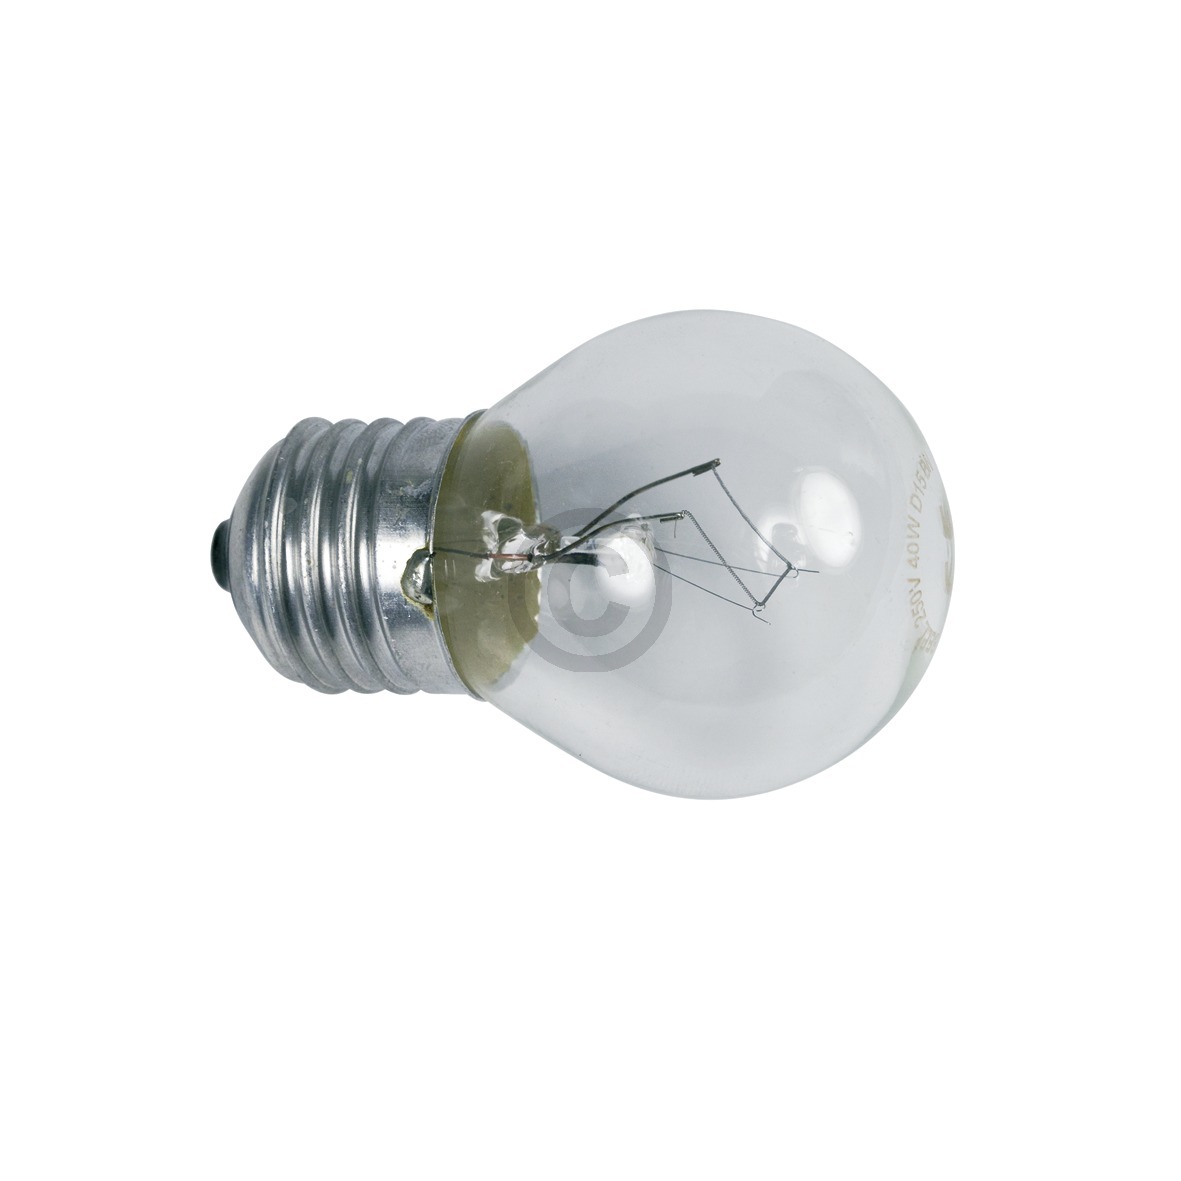 Lampe wie SAMSUNG 4713-001201 E27 40W Kugelform für Kühlschrank